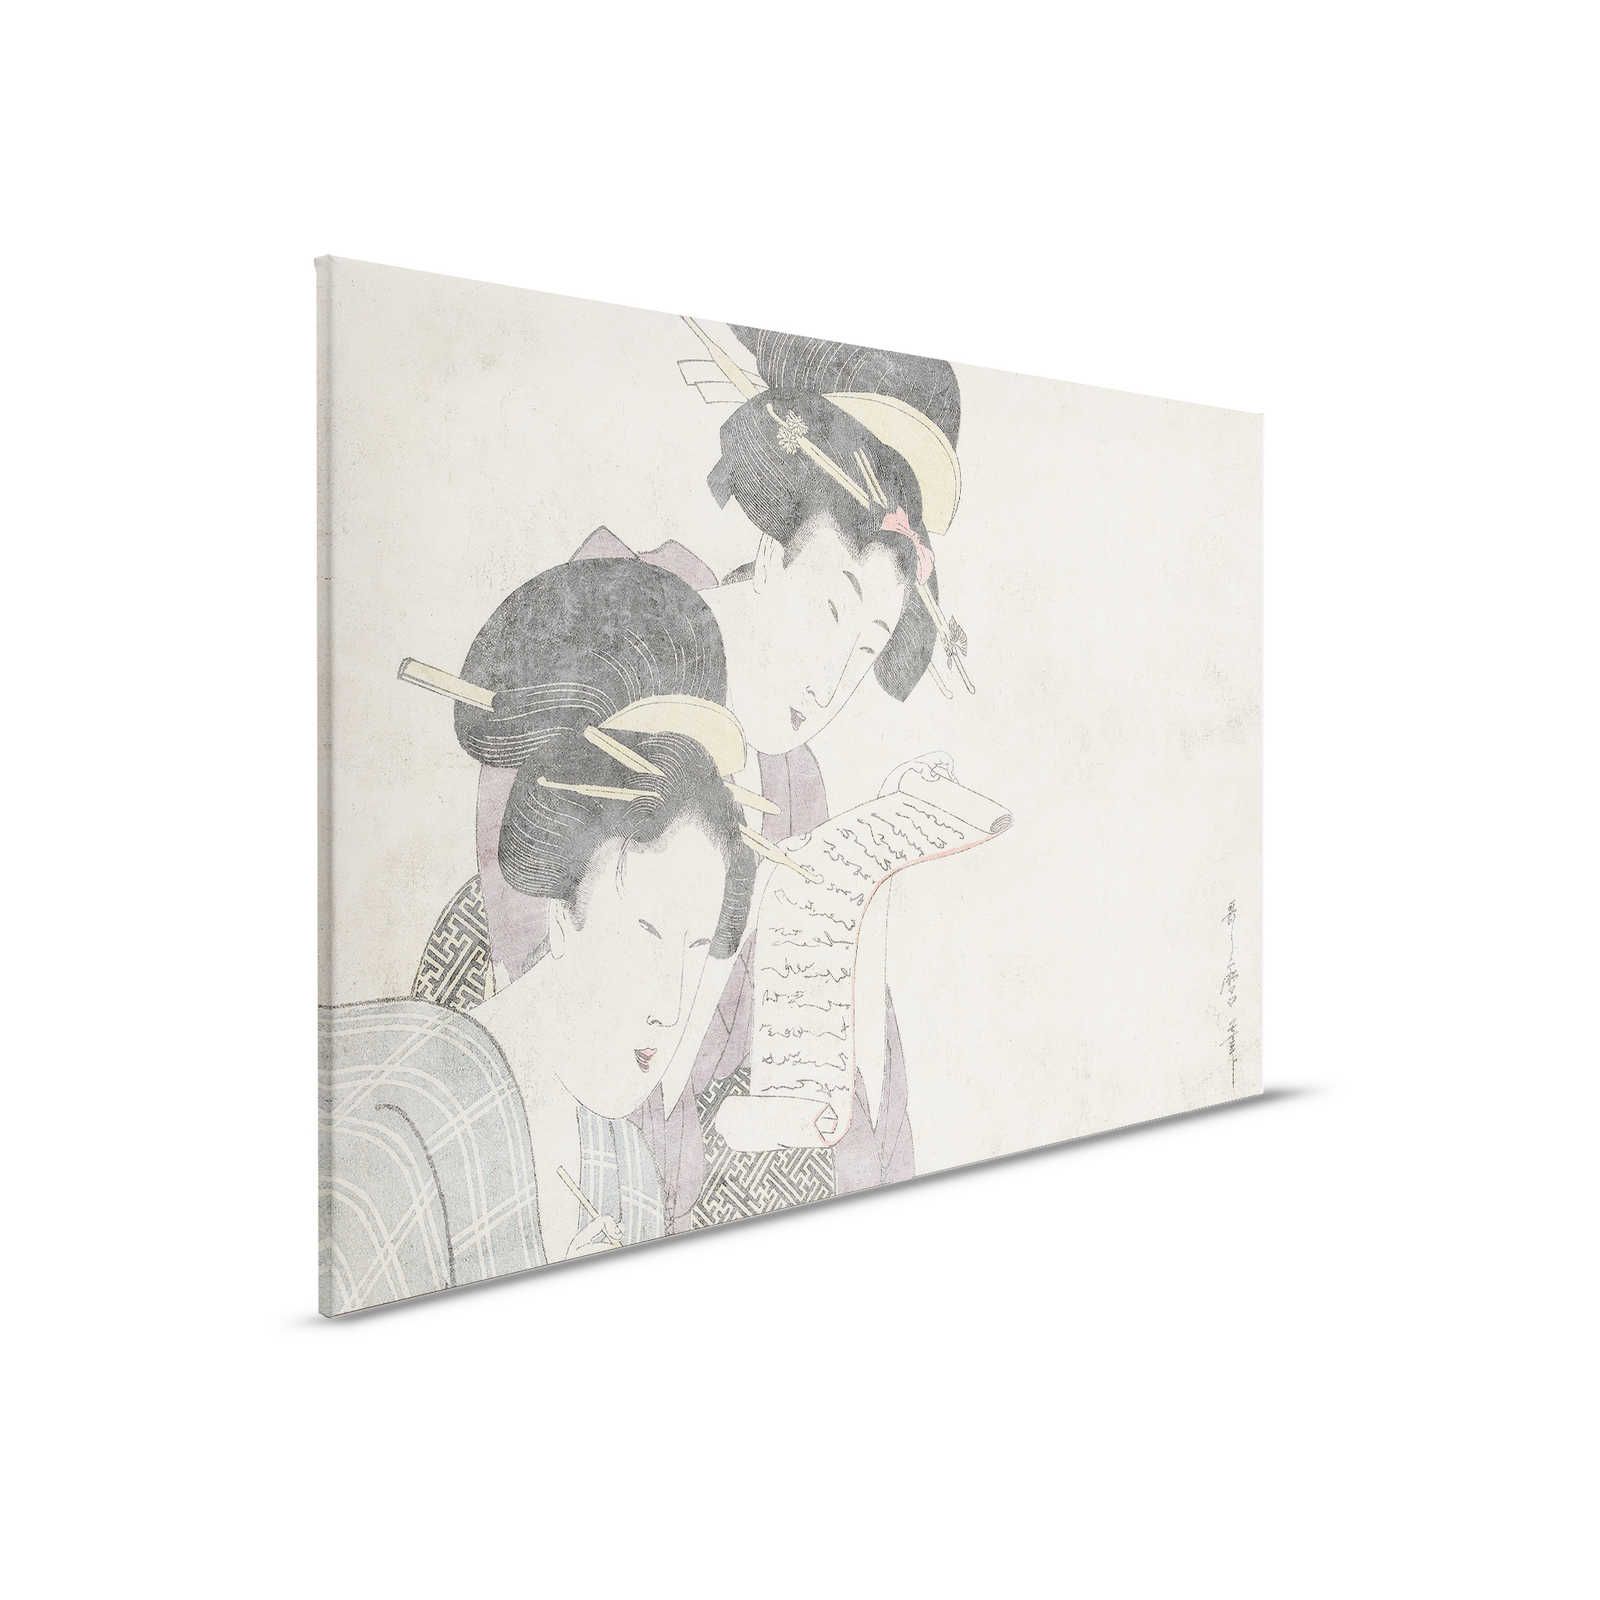 Osaka 3 - Toile asiatique vintage dessin & texture de plâtre - 0,90 m x 0,60 m
